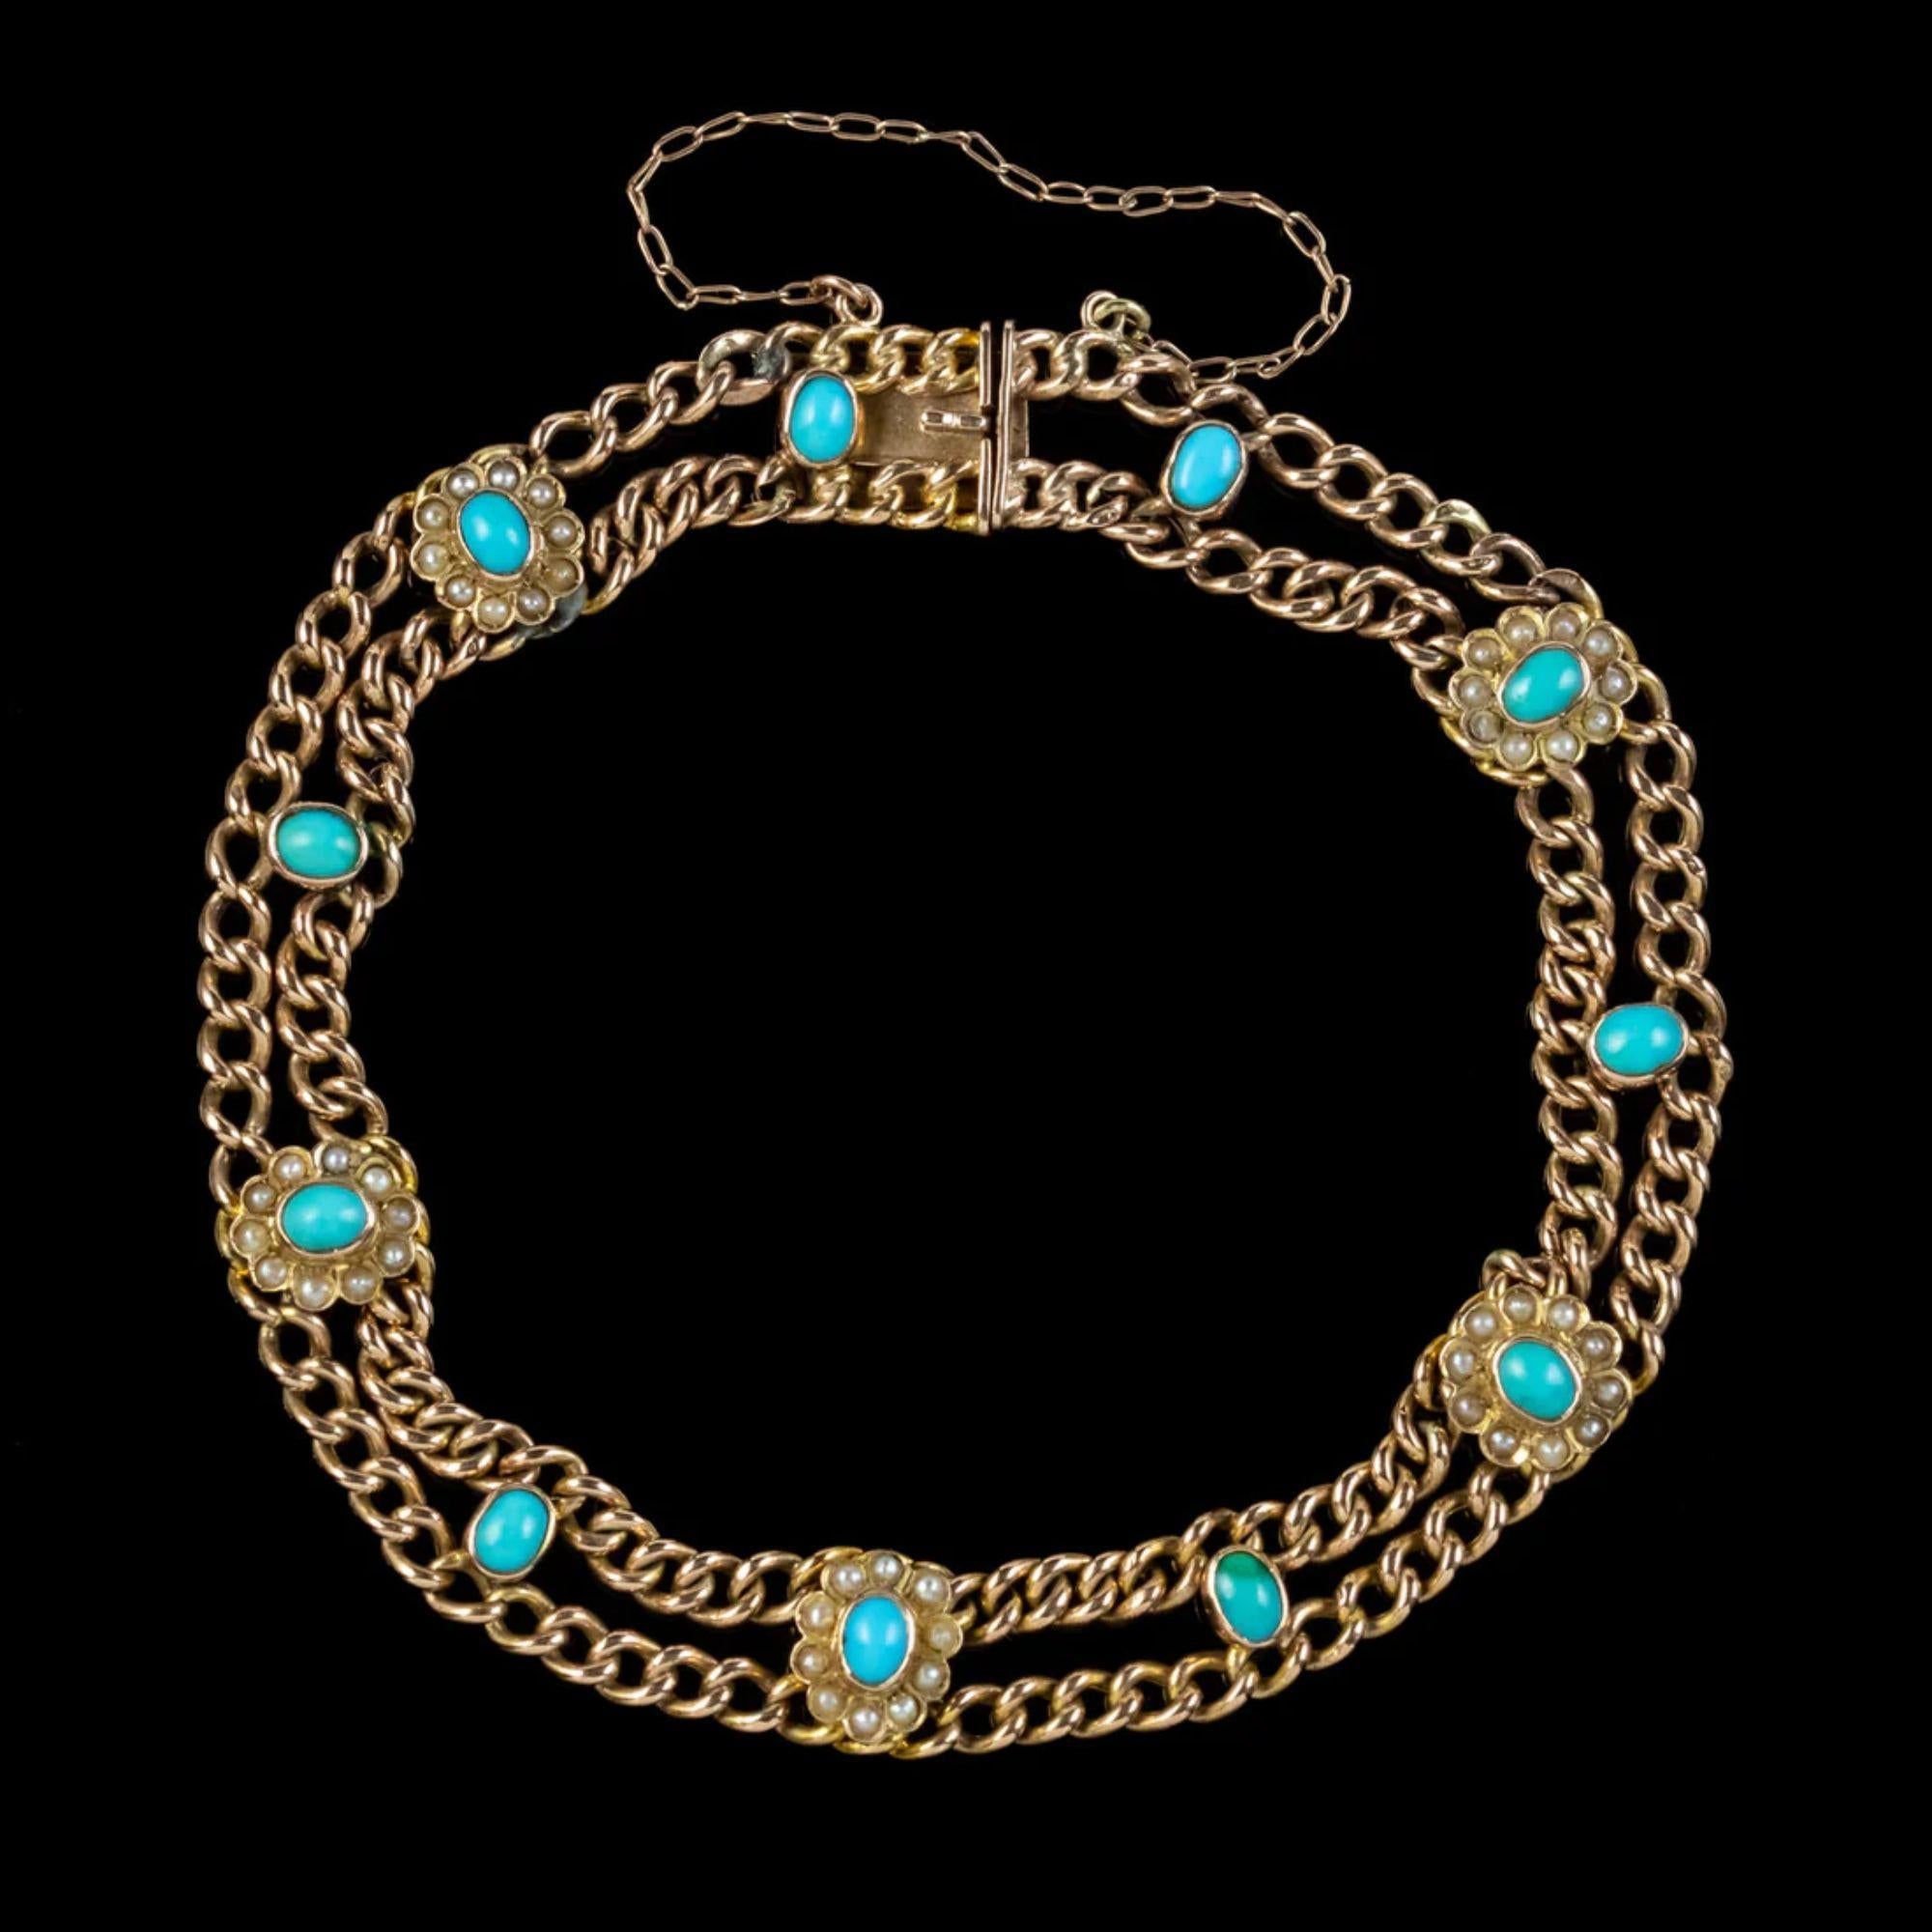 Un magnifique bracelet victorien de la fin du 19e siècle, composé de deux chaînes, entrecoupées de fleurs de turquoise et de pétales de perles. 

La pièce est entièrement en or 9ct et munie d'un fermoir en forme de boîte et d'une chaîne de sécurité